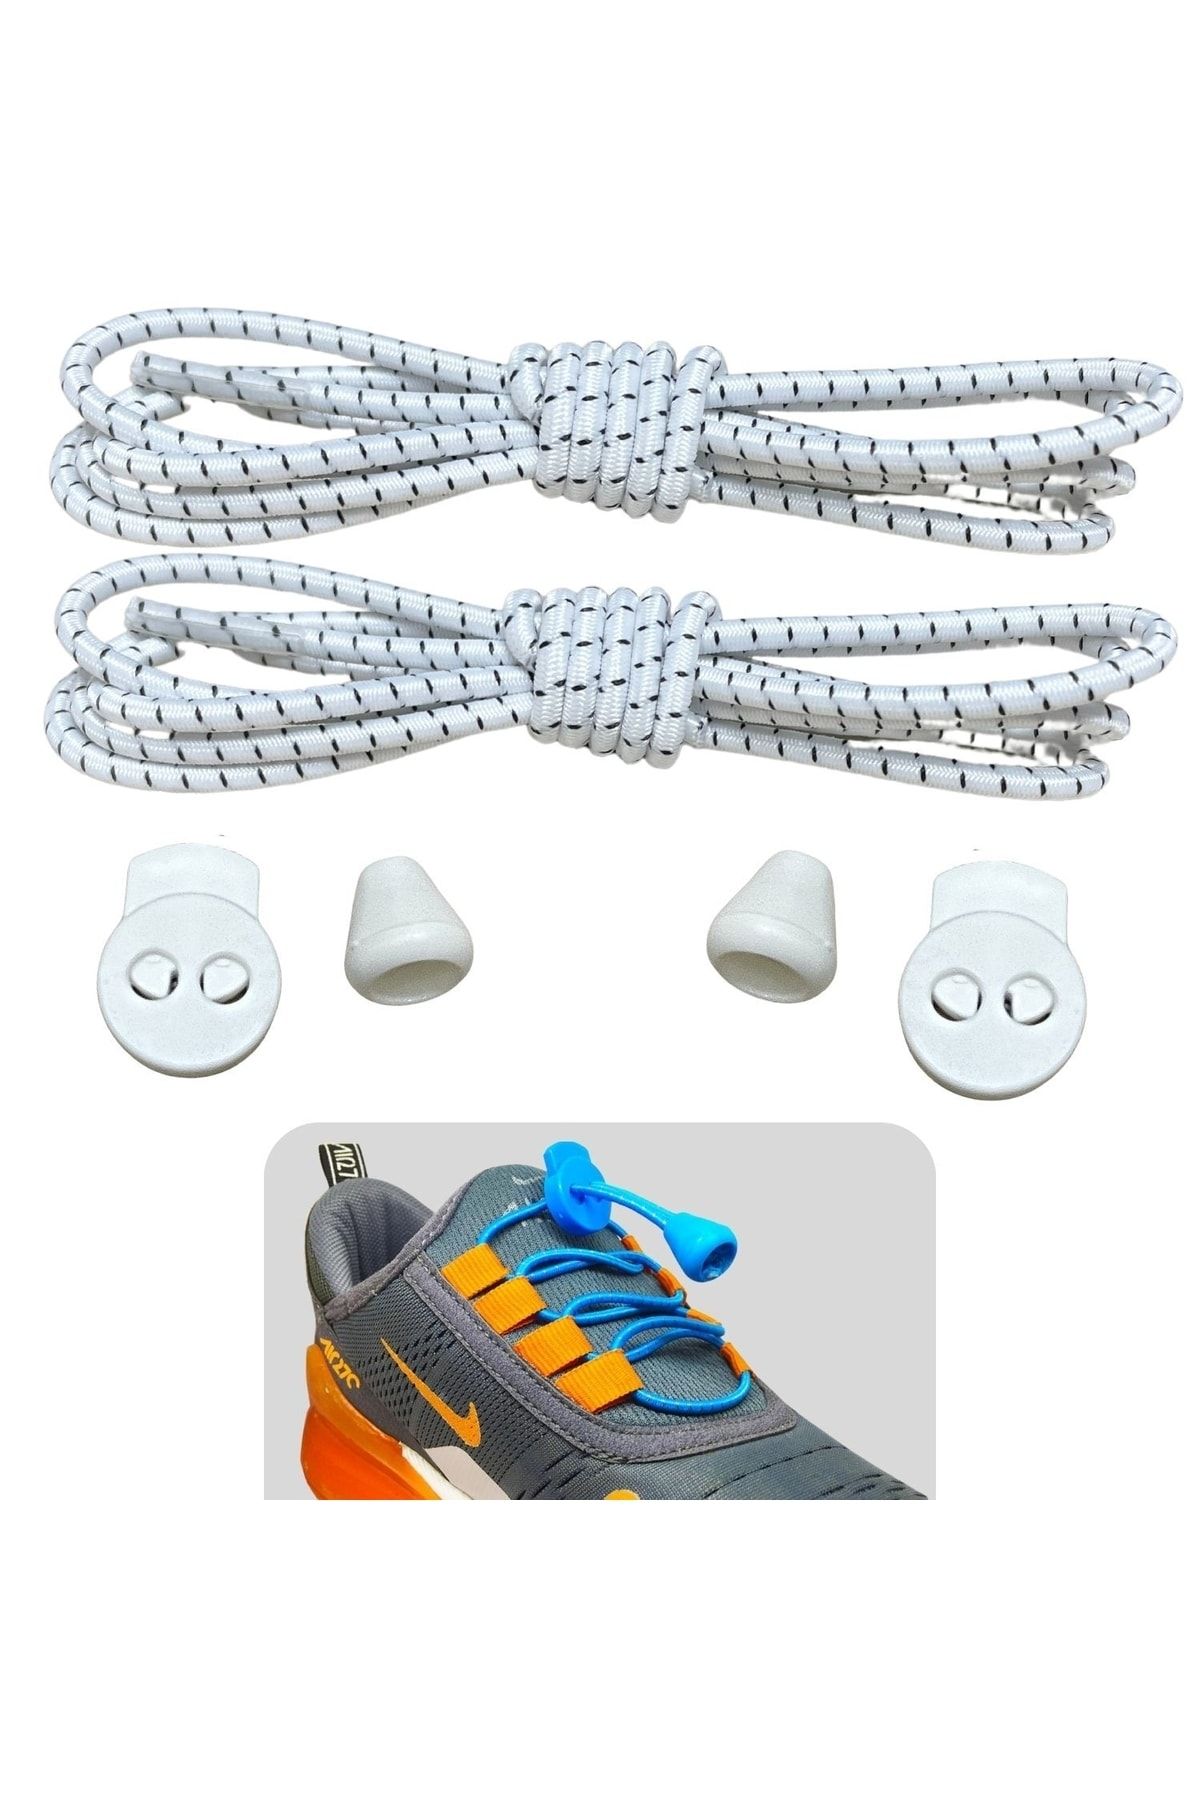 ipekbazaar Beyaz Akıllı Bağcık Pratik Lastikli Ayakkabı Bağcığı Spor Çocuk Klasik ve Bot Bağcığı 1 Çift